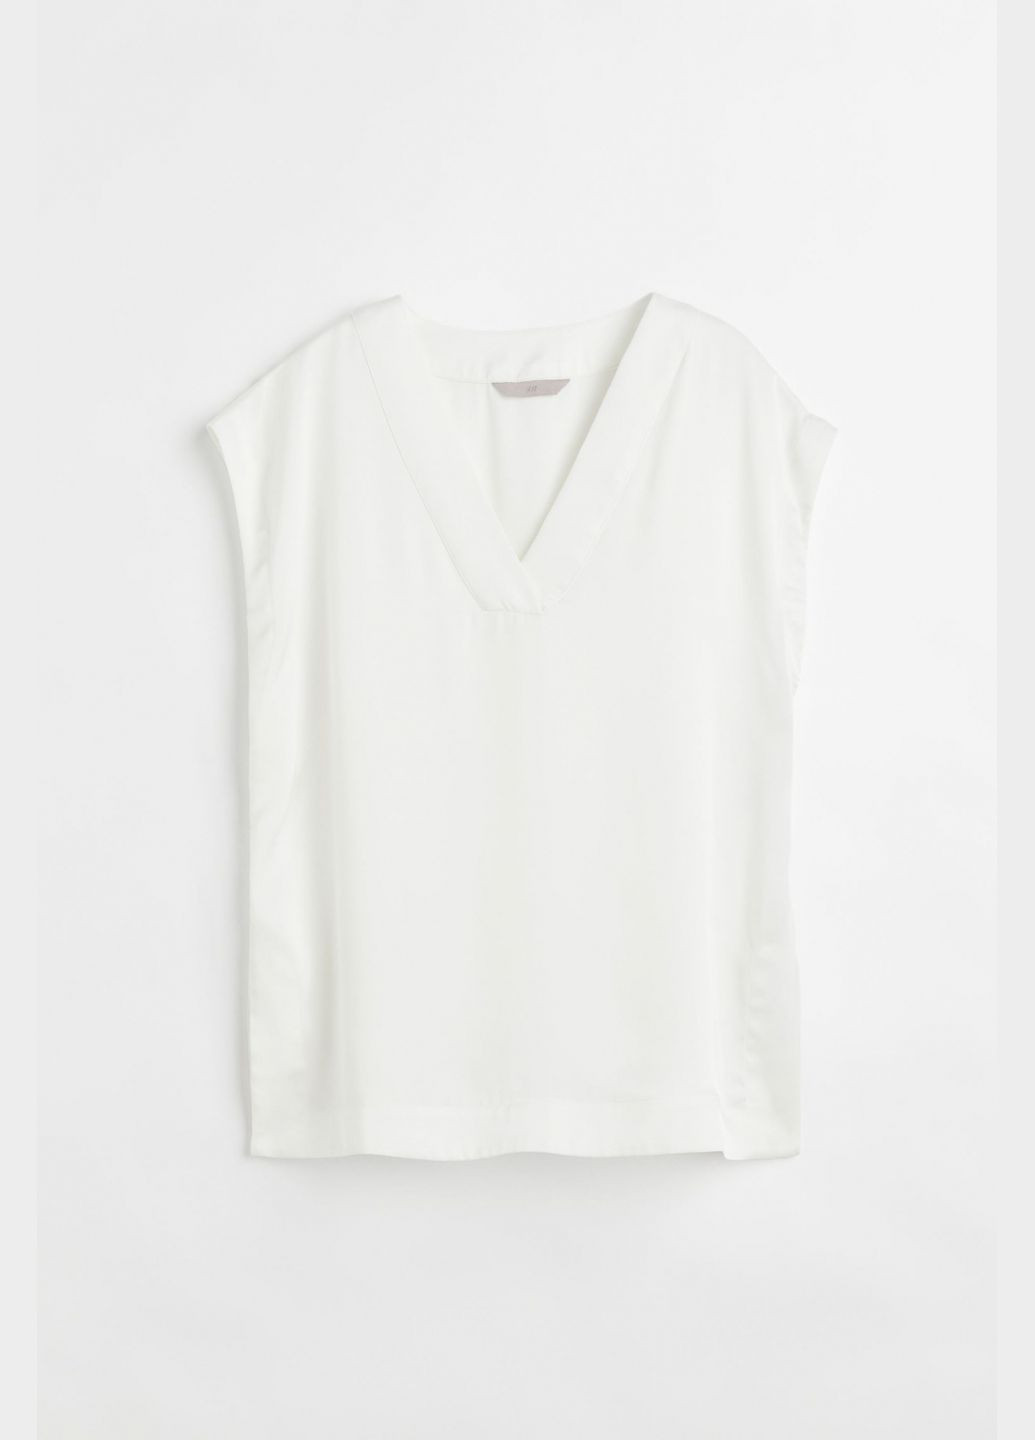 Белая демисезонная блузка атласная с боковыми разрезами для женщины 1066710-001 H&M